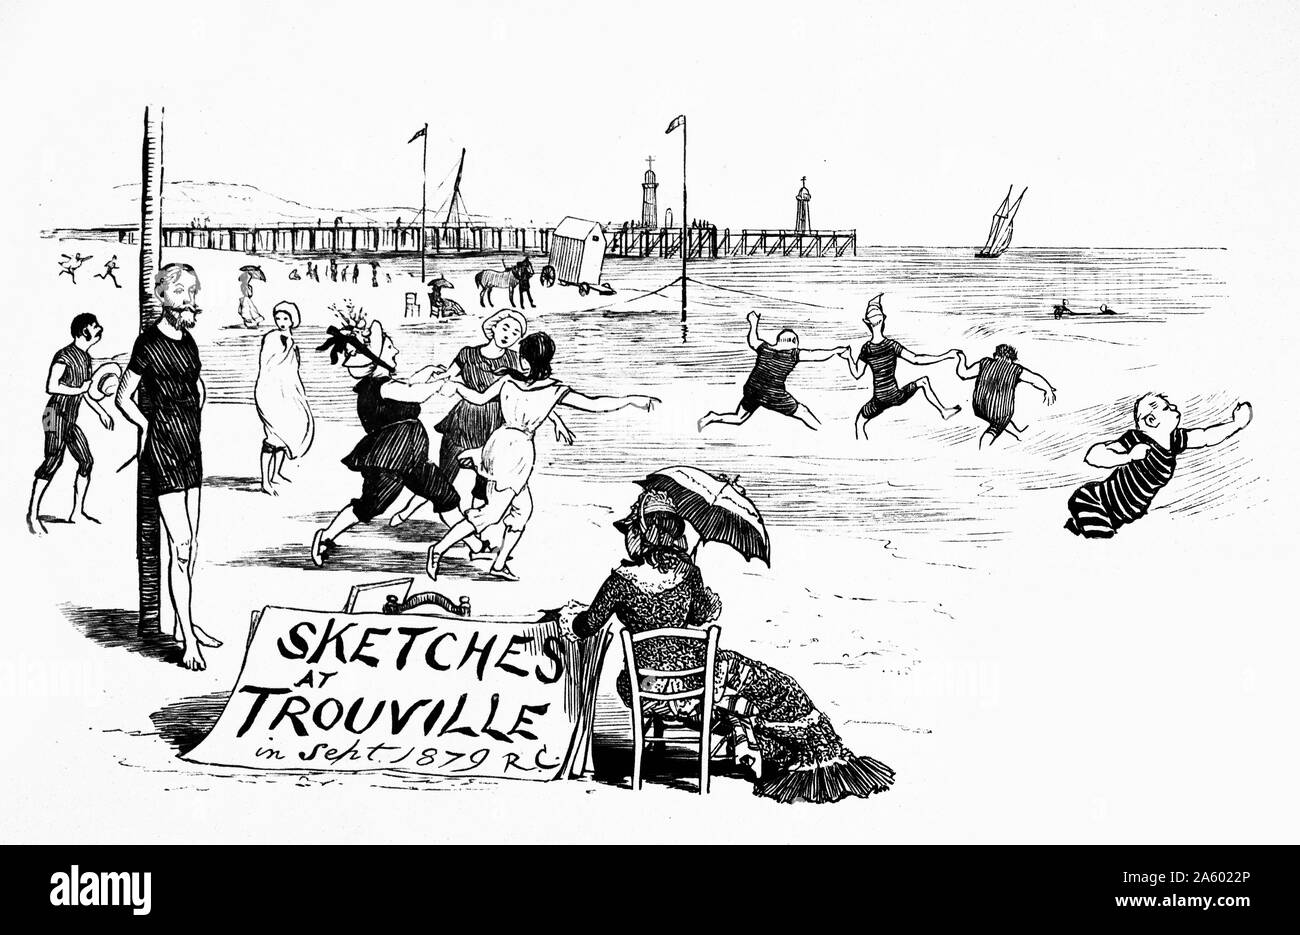 La ilustración muestra los franceses disfrutando del verano en el Trouville-sur-Mer playa. Una multitud de personas se muestran jugando en el mar, mientras que una figura femenina ofrece bocetos en primer plano. Fecha 1877 Foto de stock